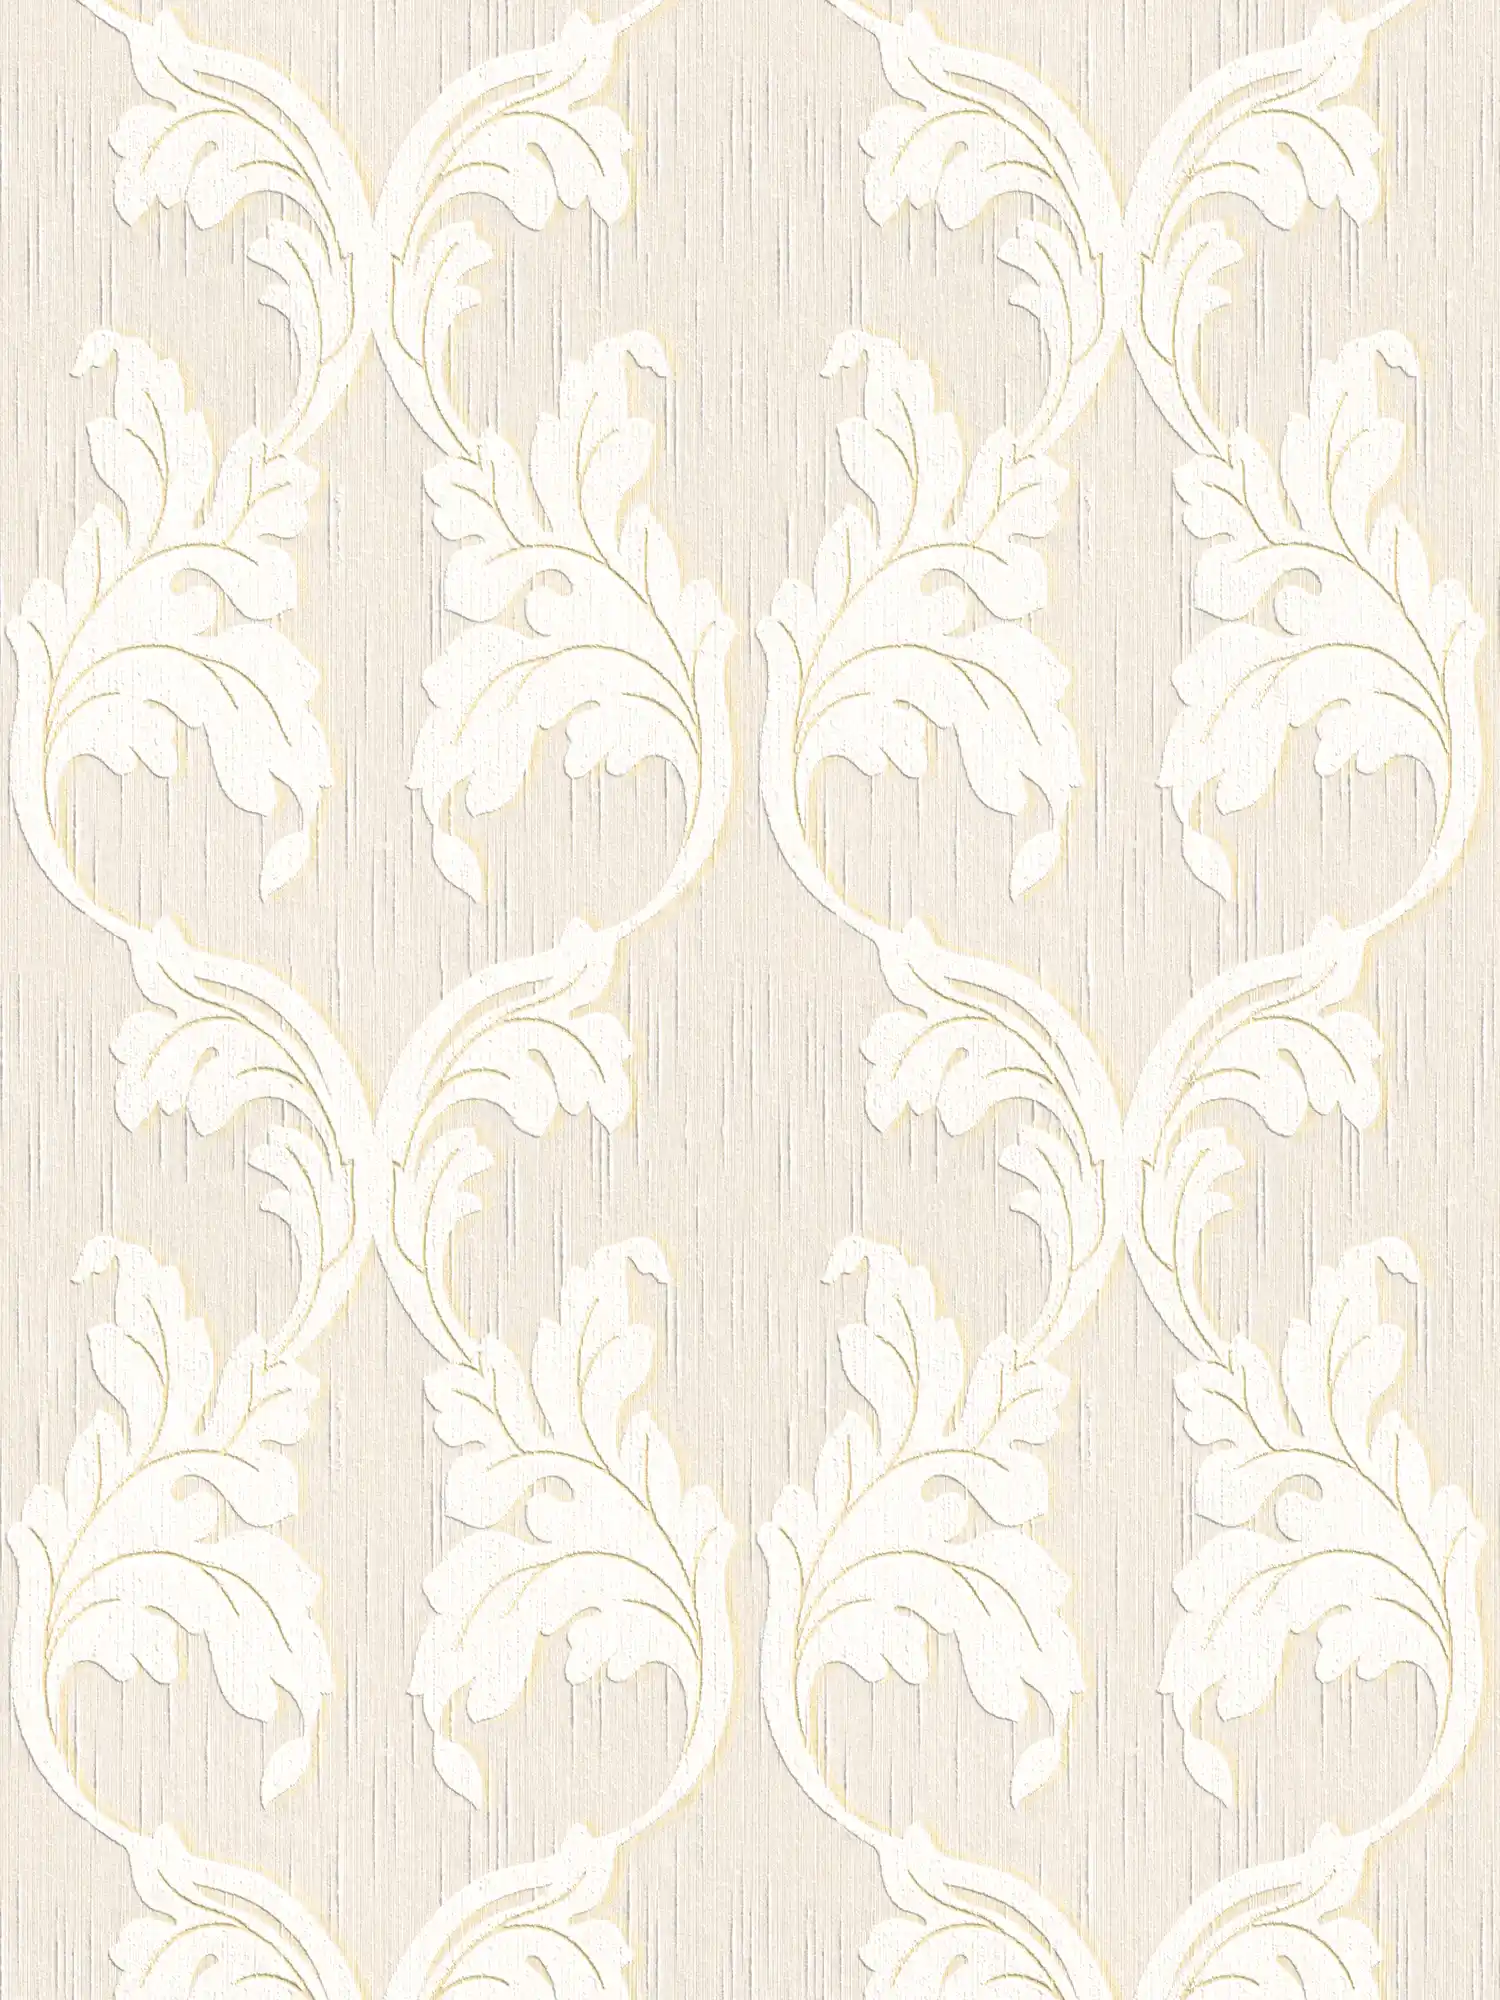 papier peint en papier textile premium avec ornement rinceaux - beige, crème, or
